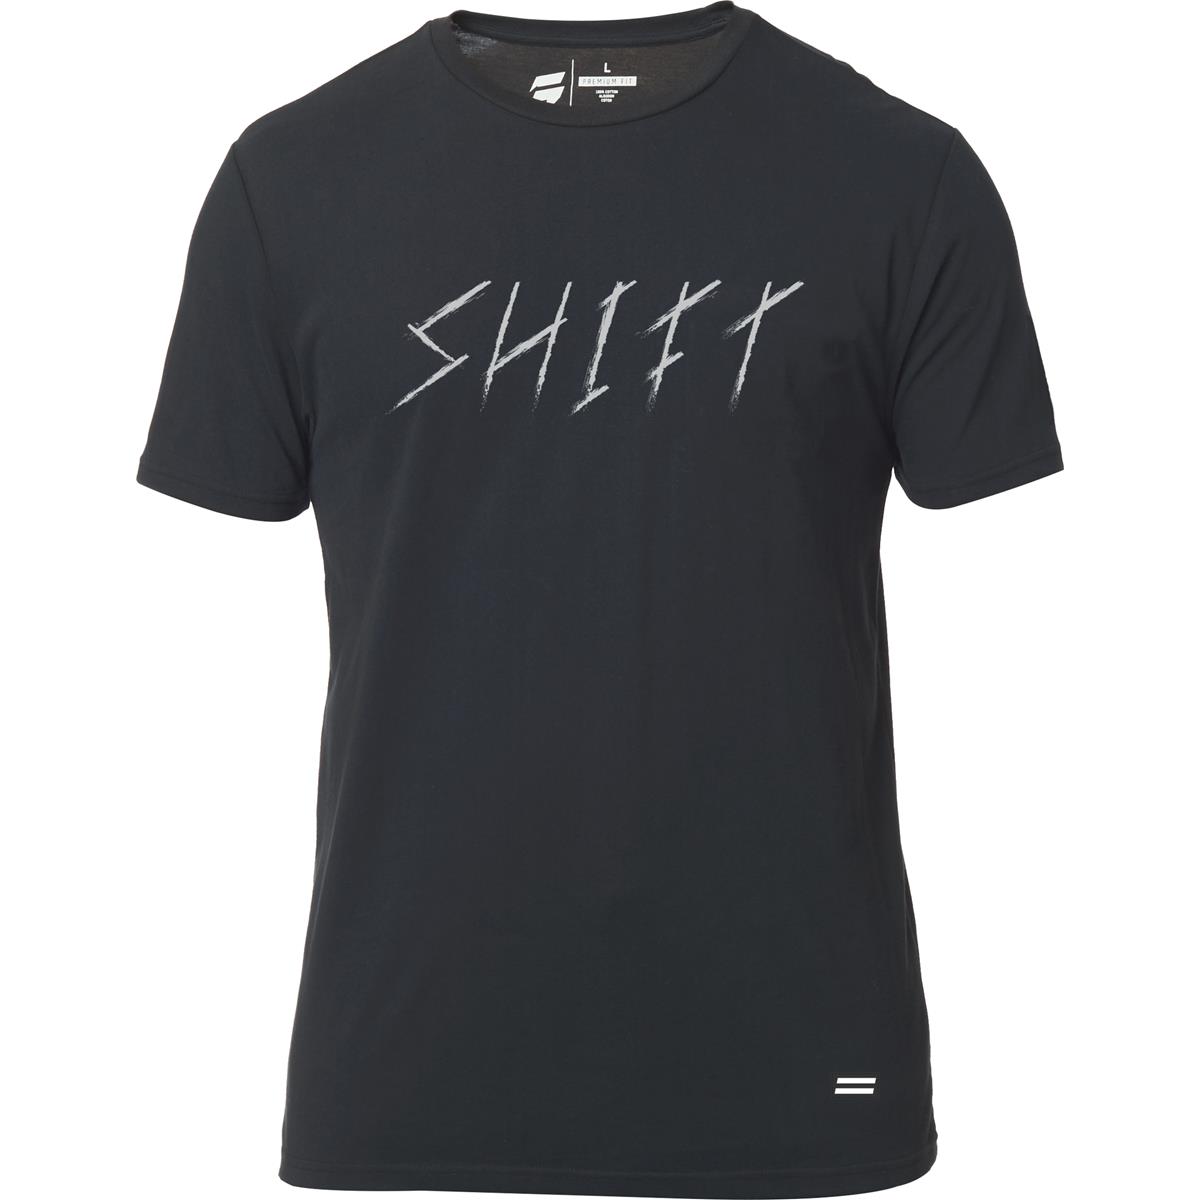 Shift T-Shirt Carved Black Vintage